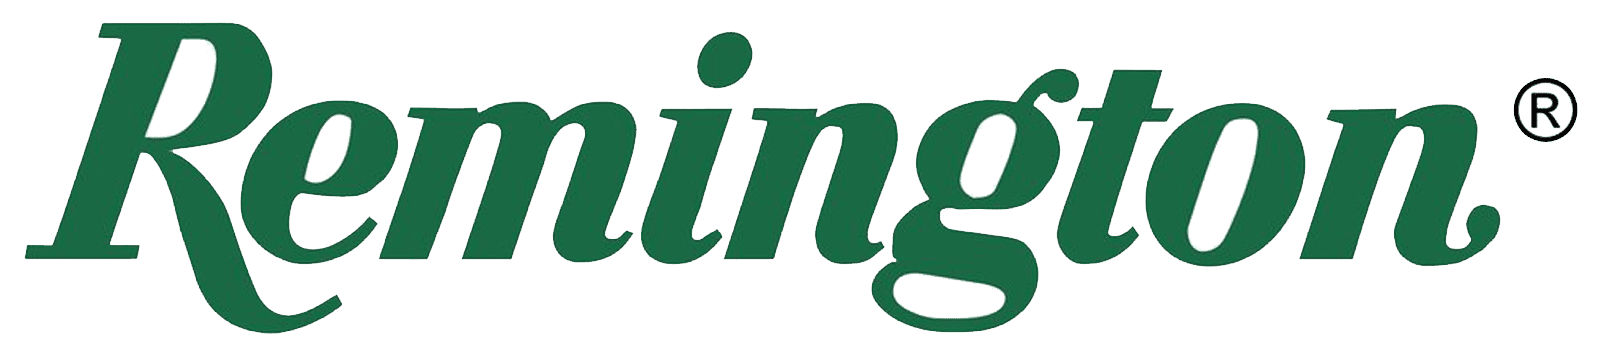 Remington Logo